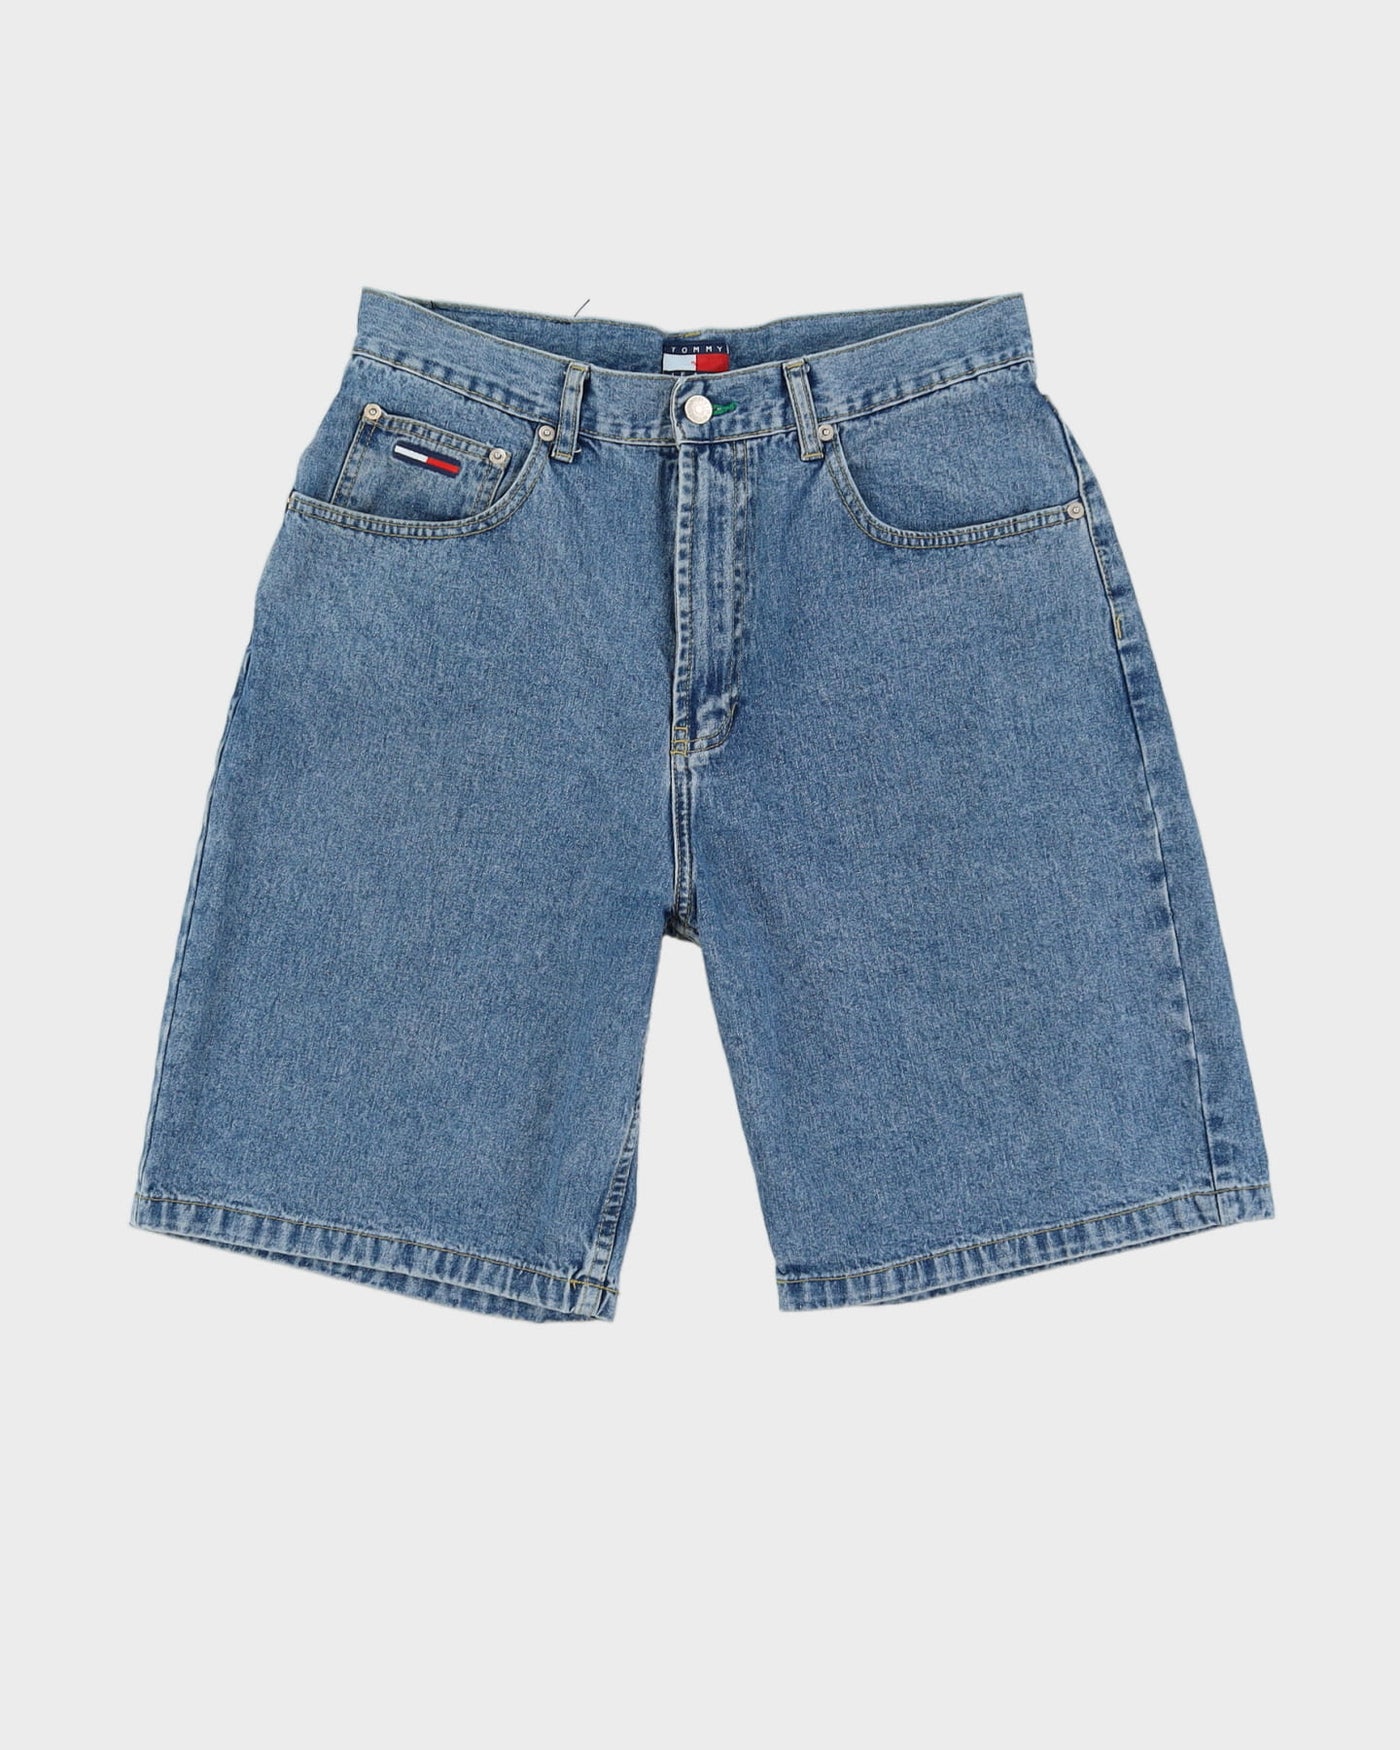 Vintage 90s Tommy Hilfiger Blue Denim Shorts - W32